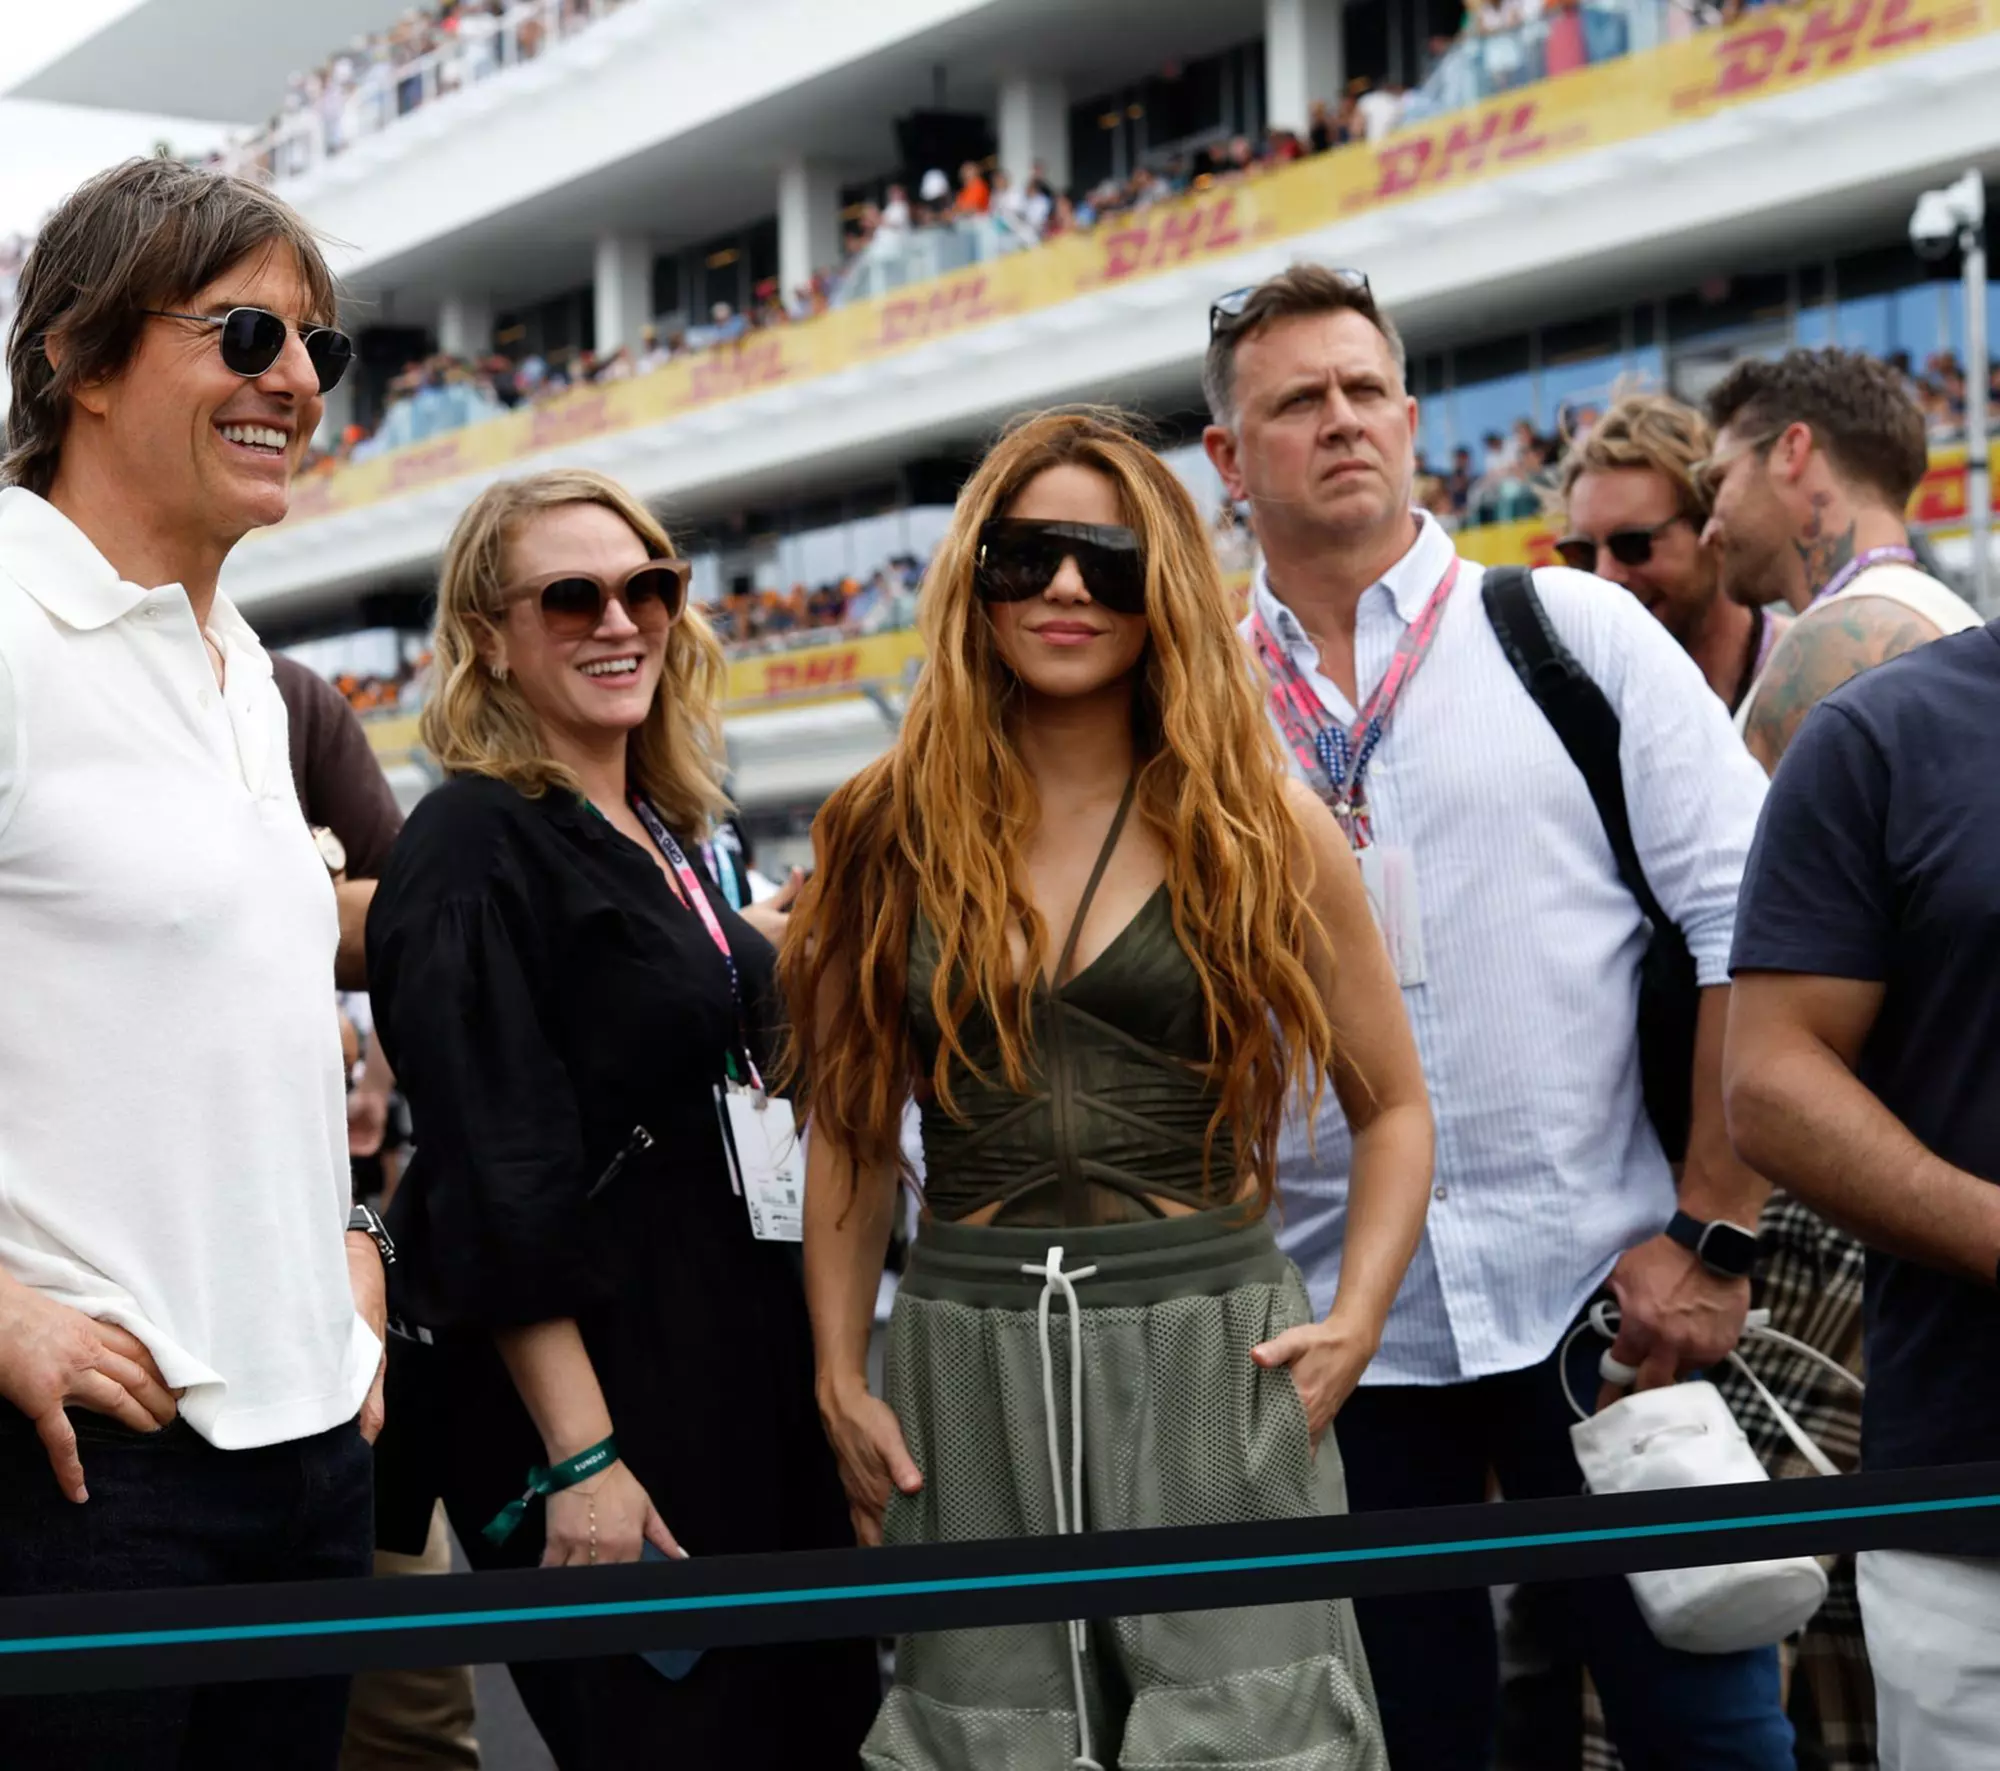 Les célébrités assistent au Grand Prix de Formule 1 de Miami